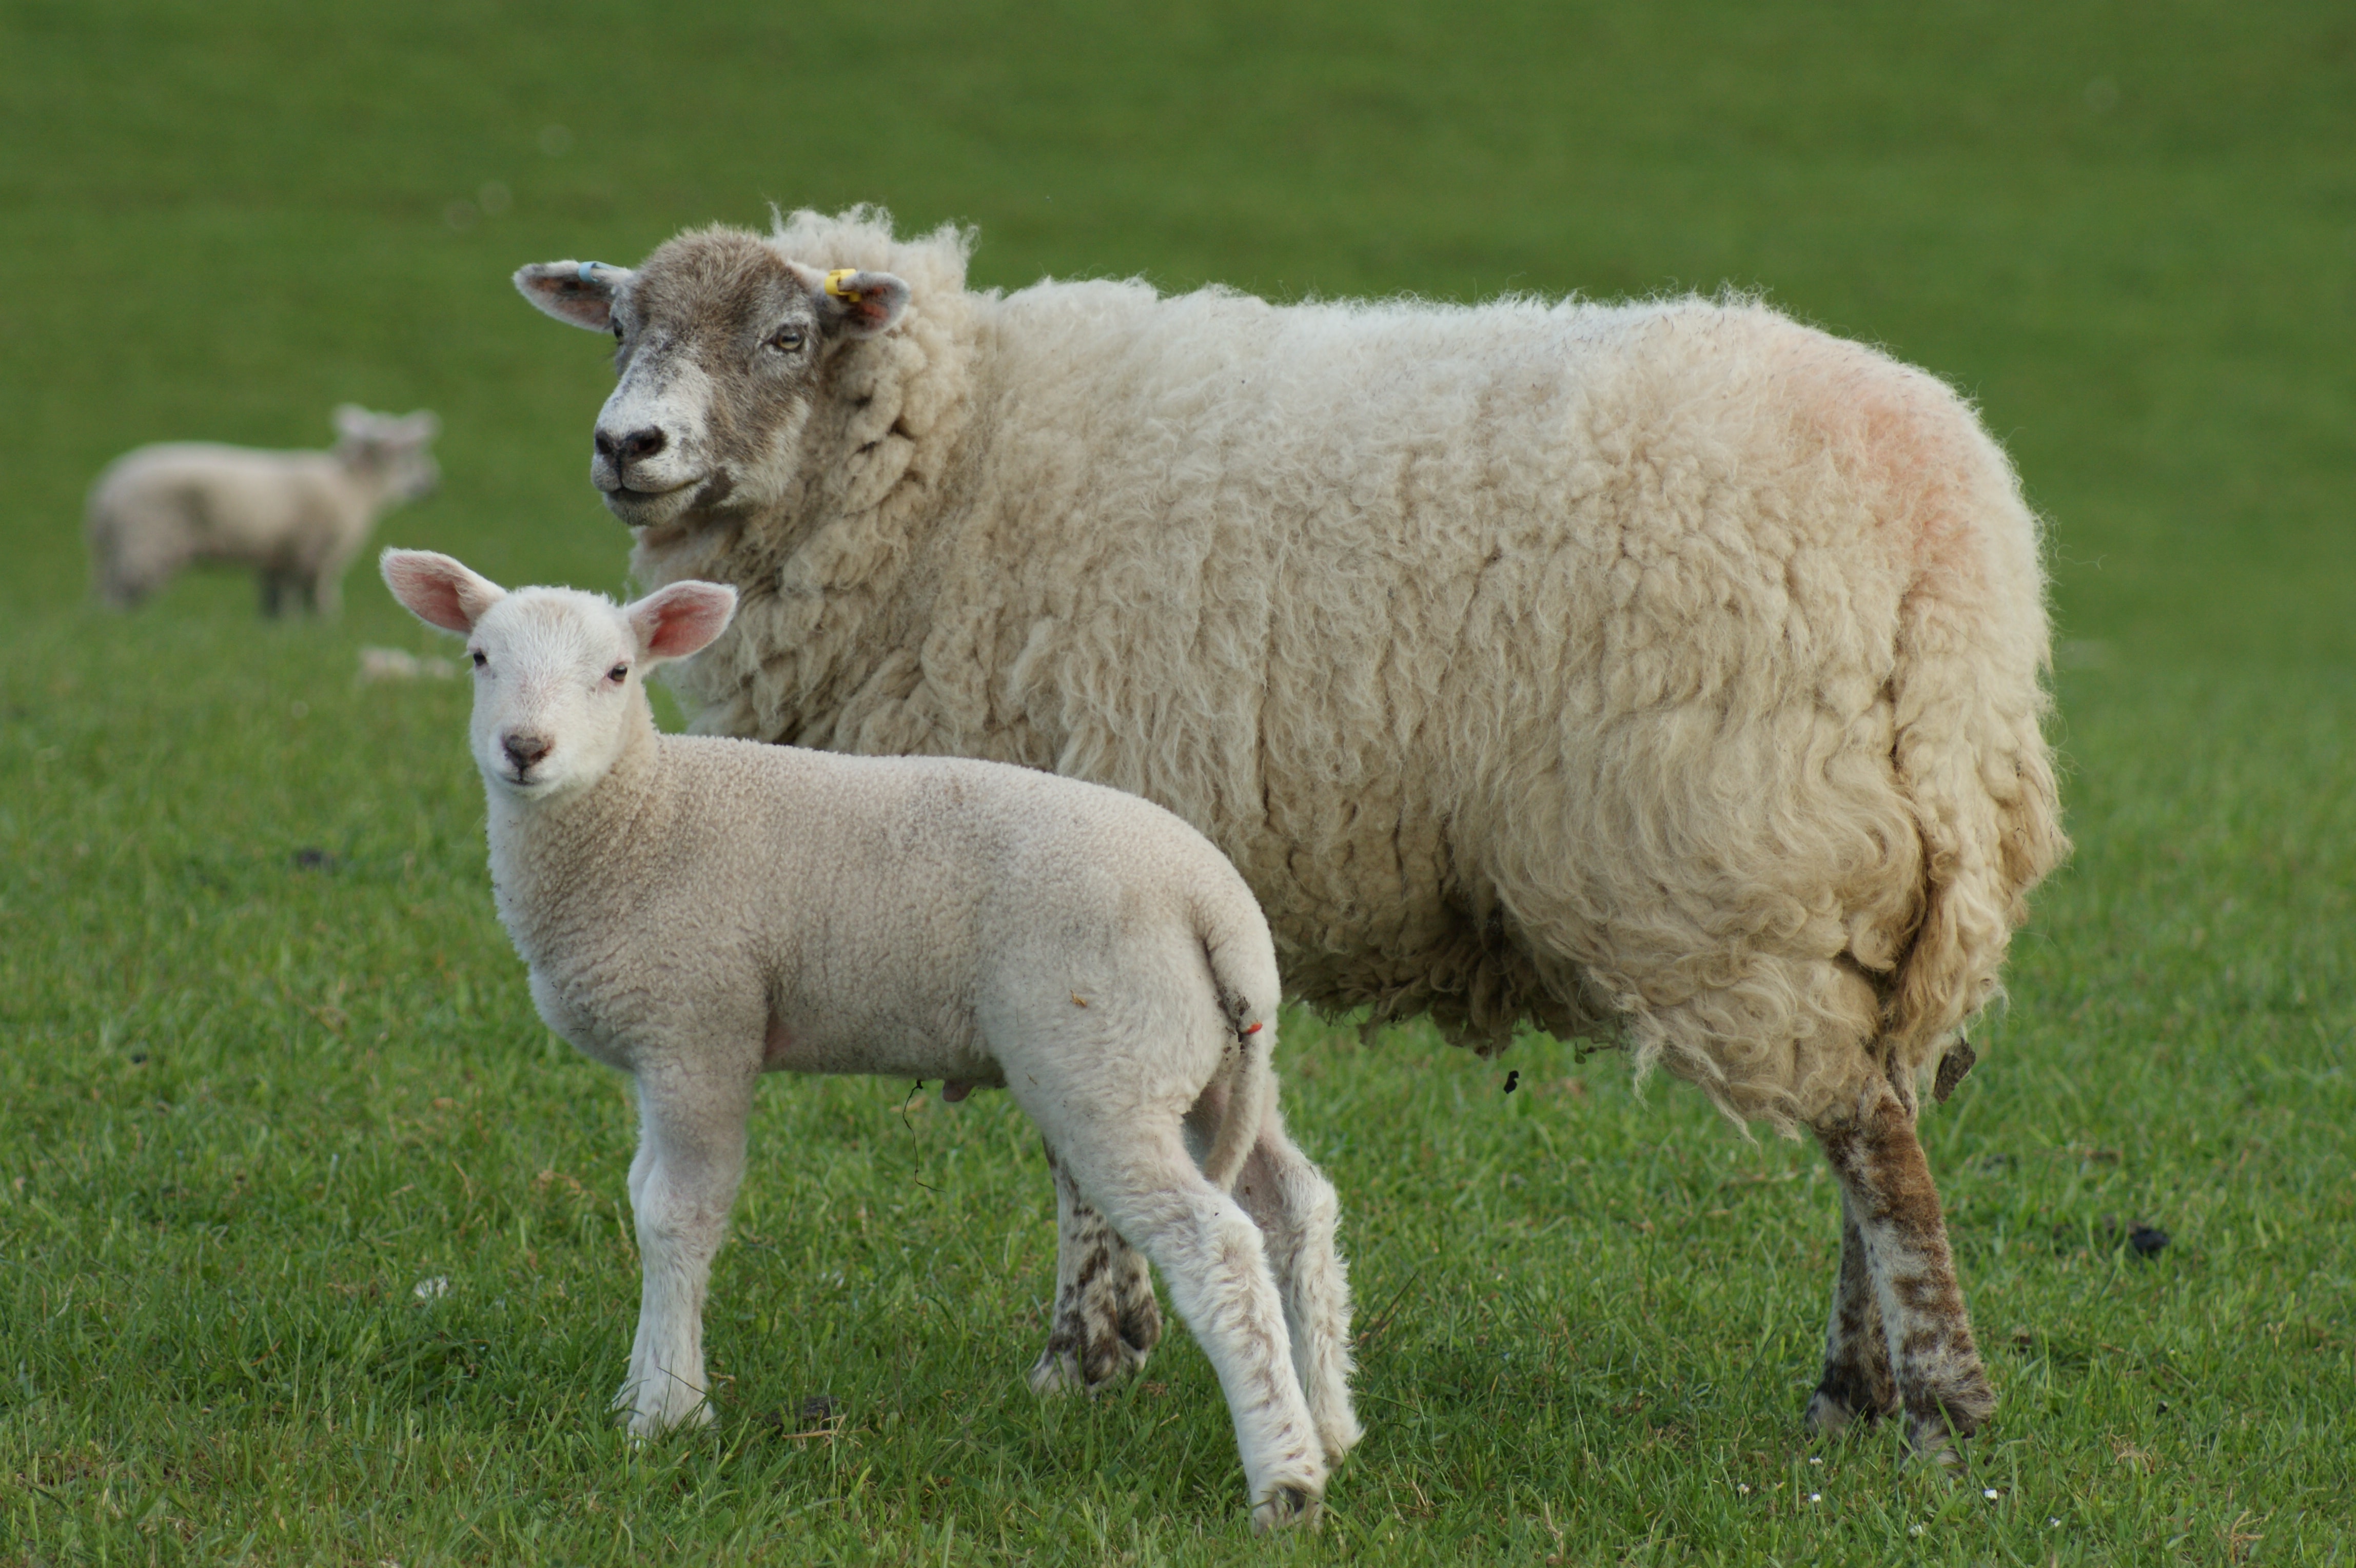 Innovis Ltd - Aberystwyth, UK, sheep breeds